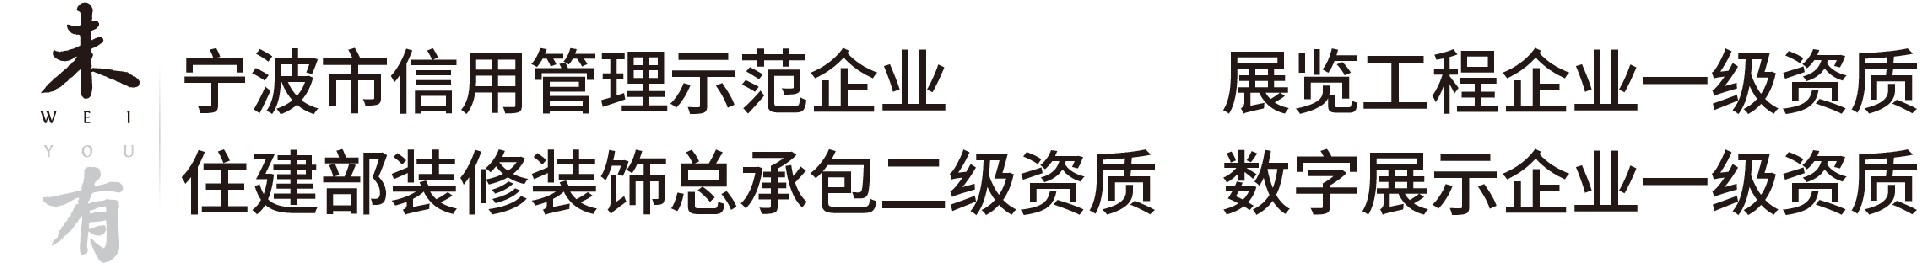 中国电子商务协会数字展示企业资质证书一级-资质与荣誉-浙江未有文化科技有限公司官网-浙江宁波-致力于数字技术在文化展示与传播领域的应用。